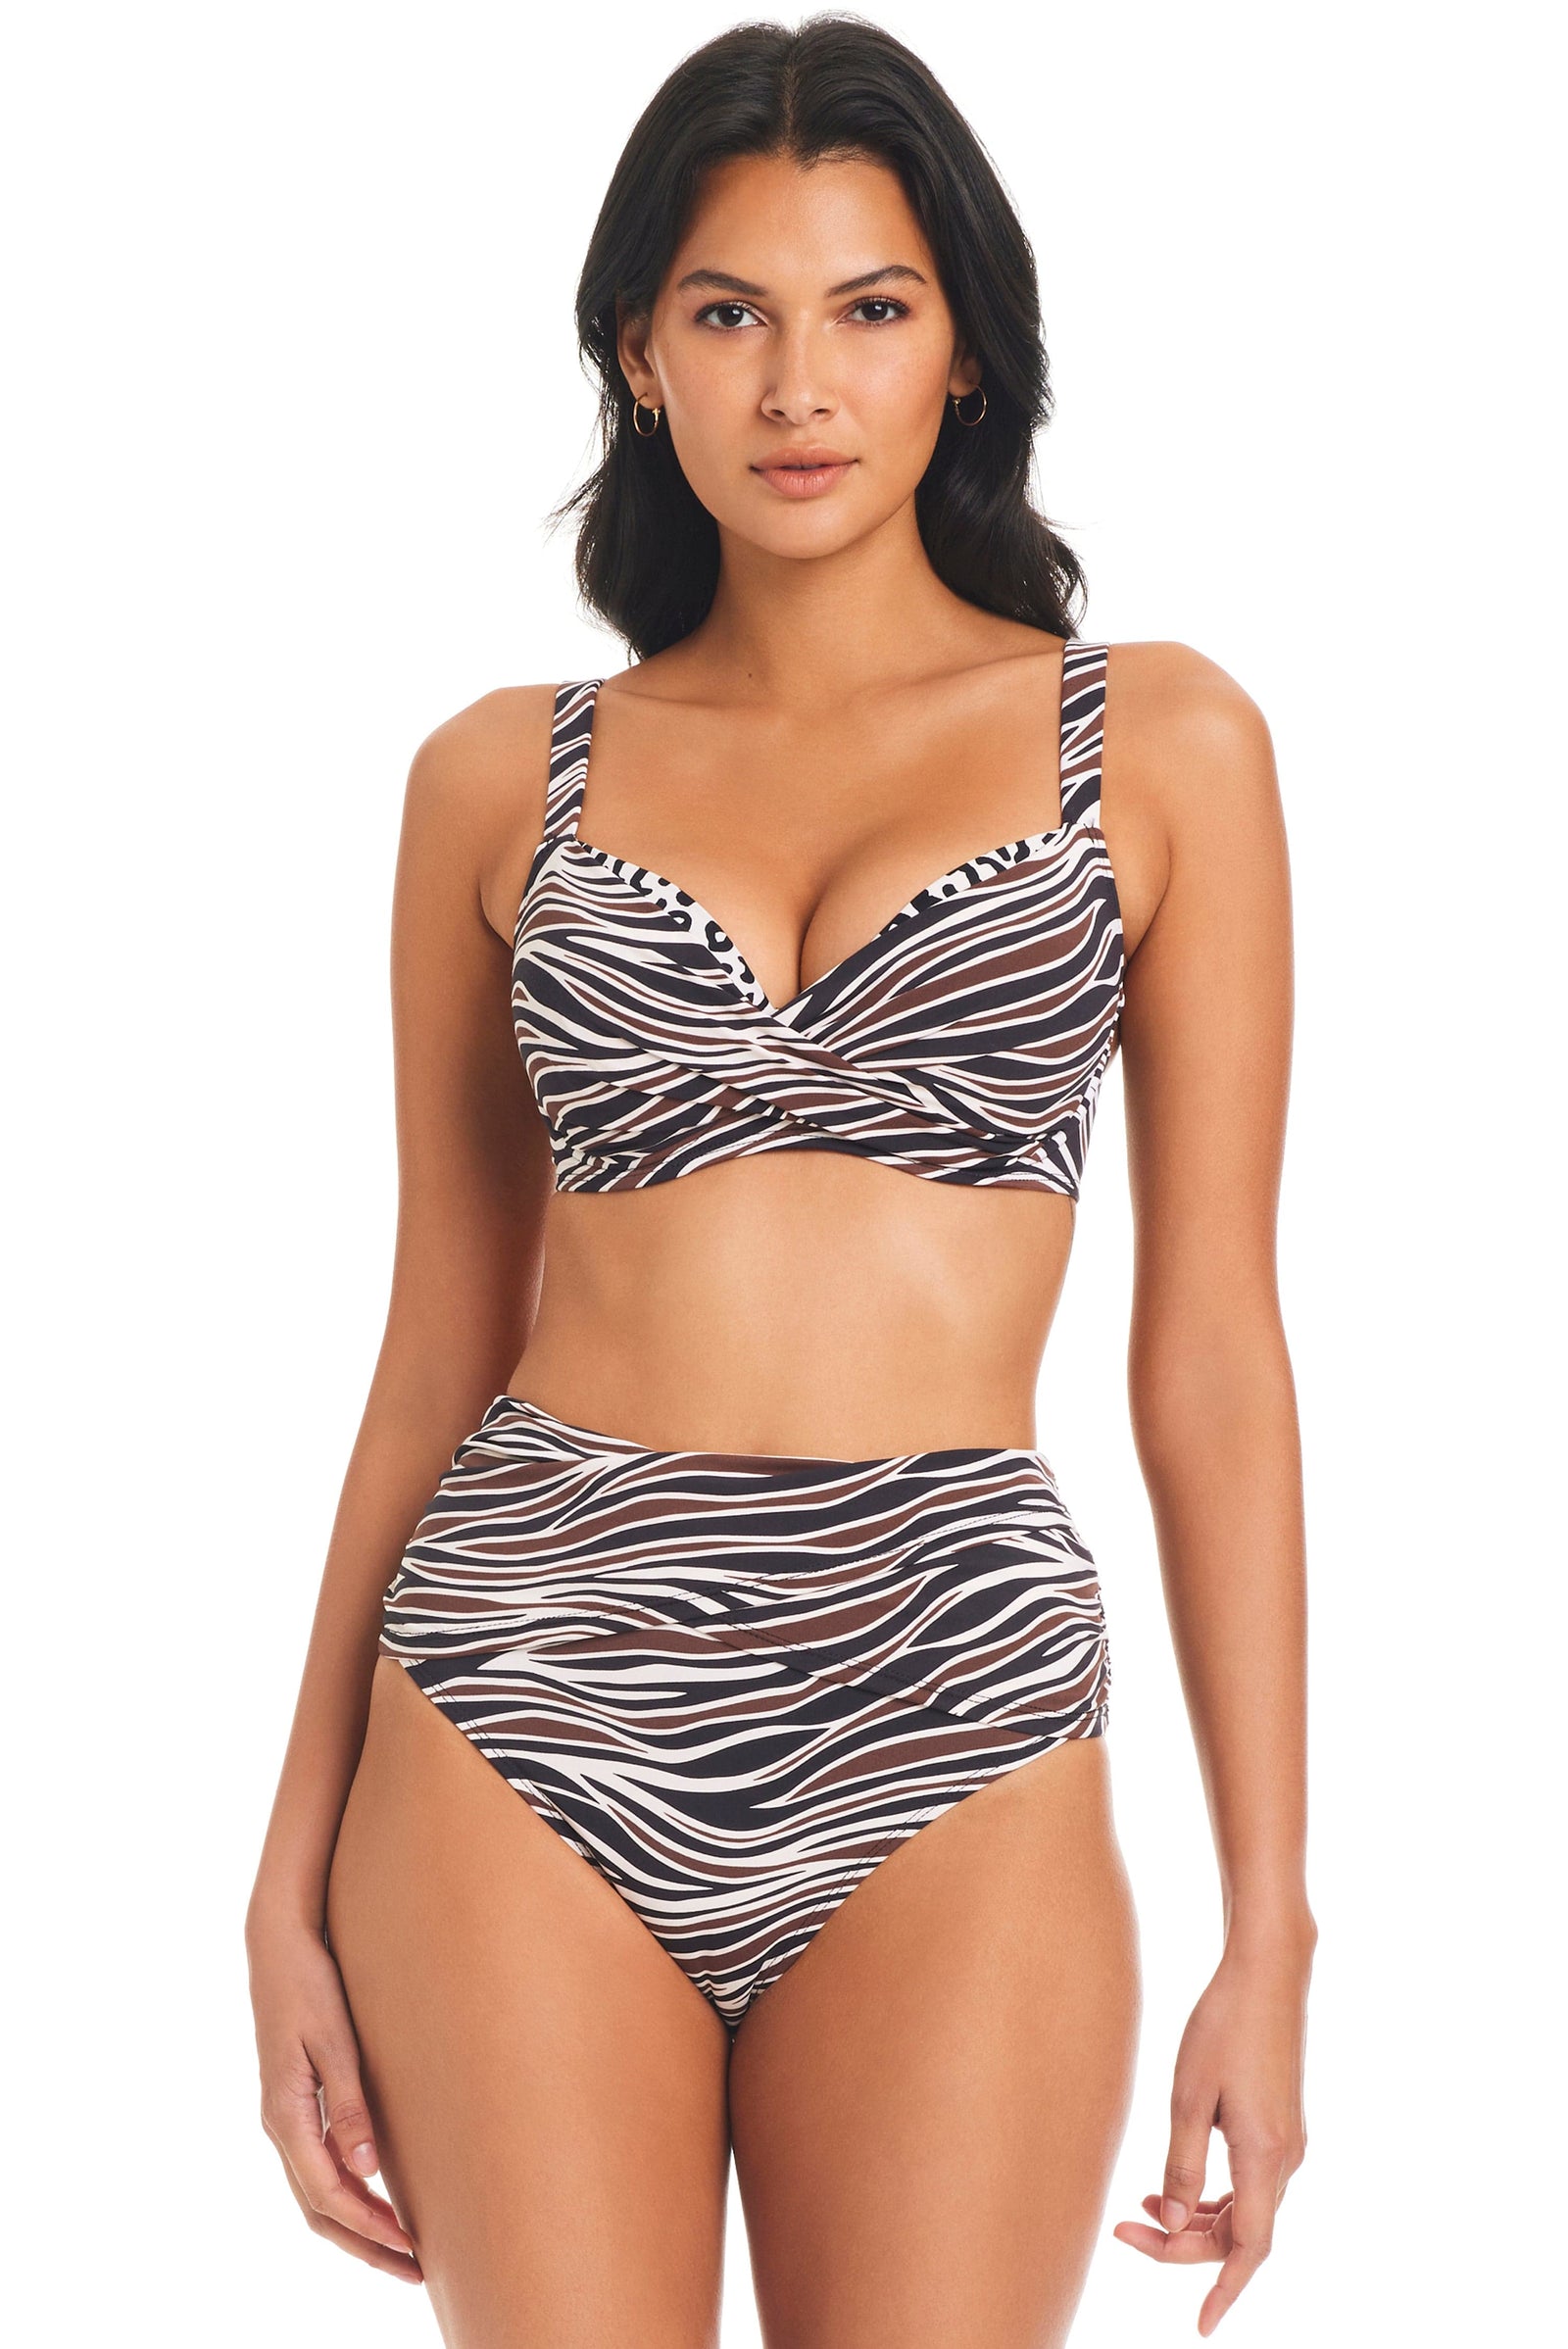 Underwire Bikini Tops and Bra Sized Swimwear by Cup Size